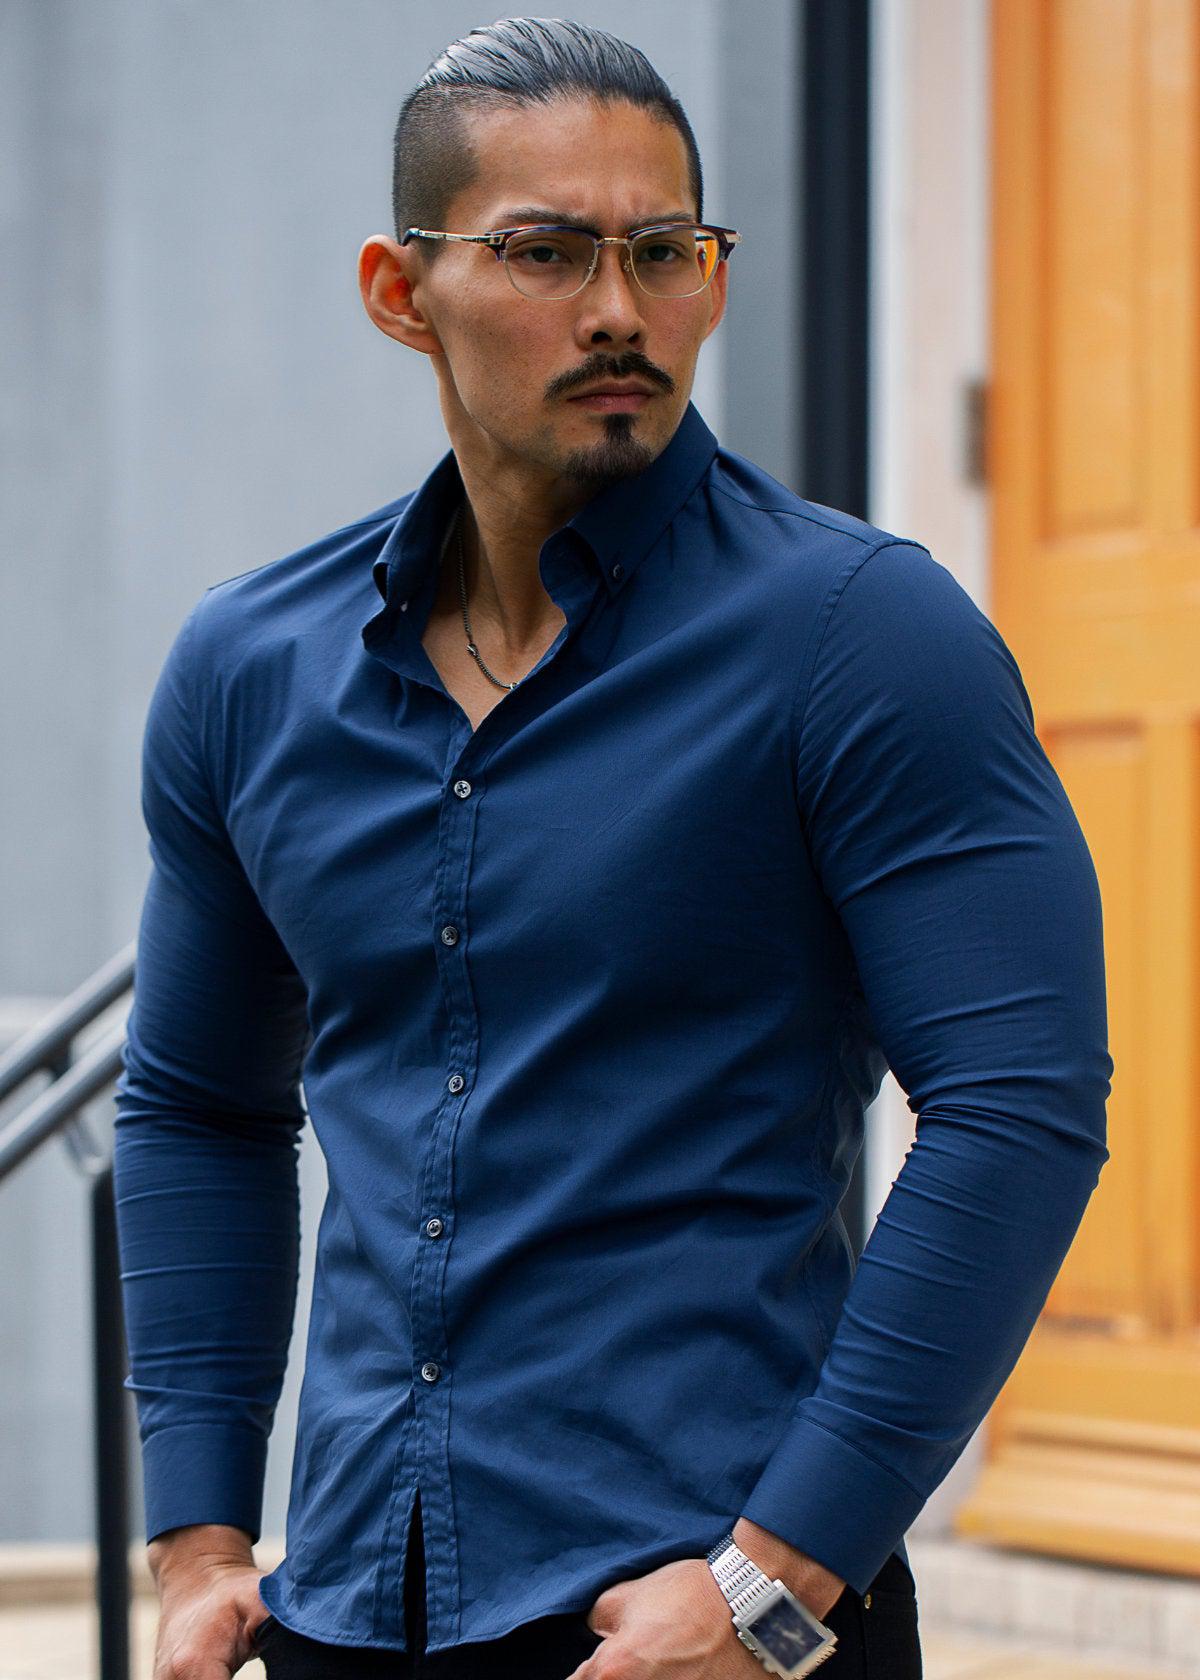 紺の長袖シャツを着た男性